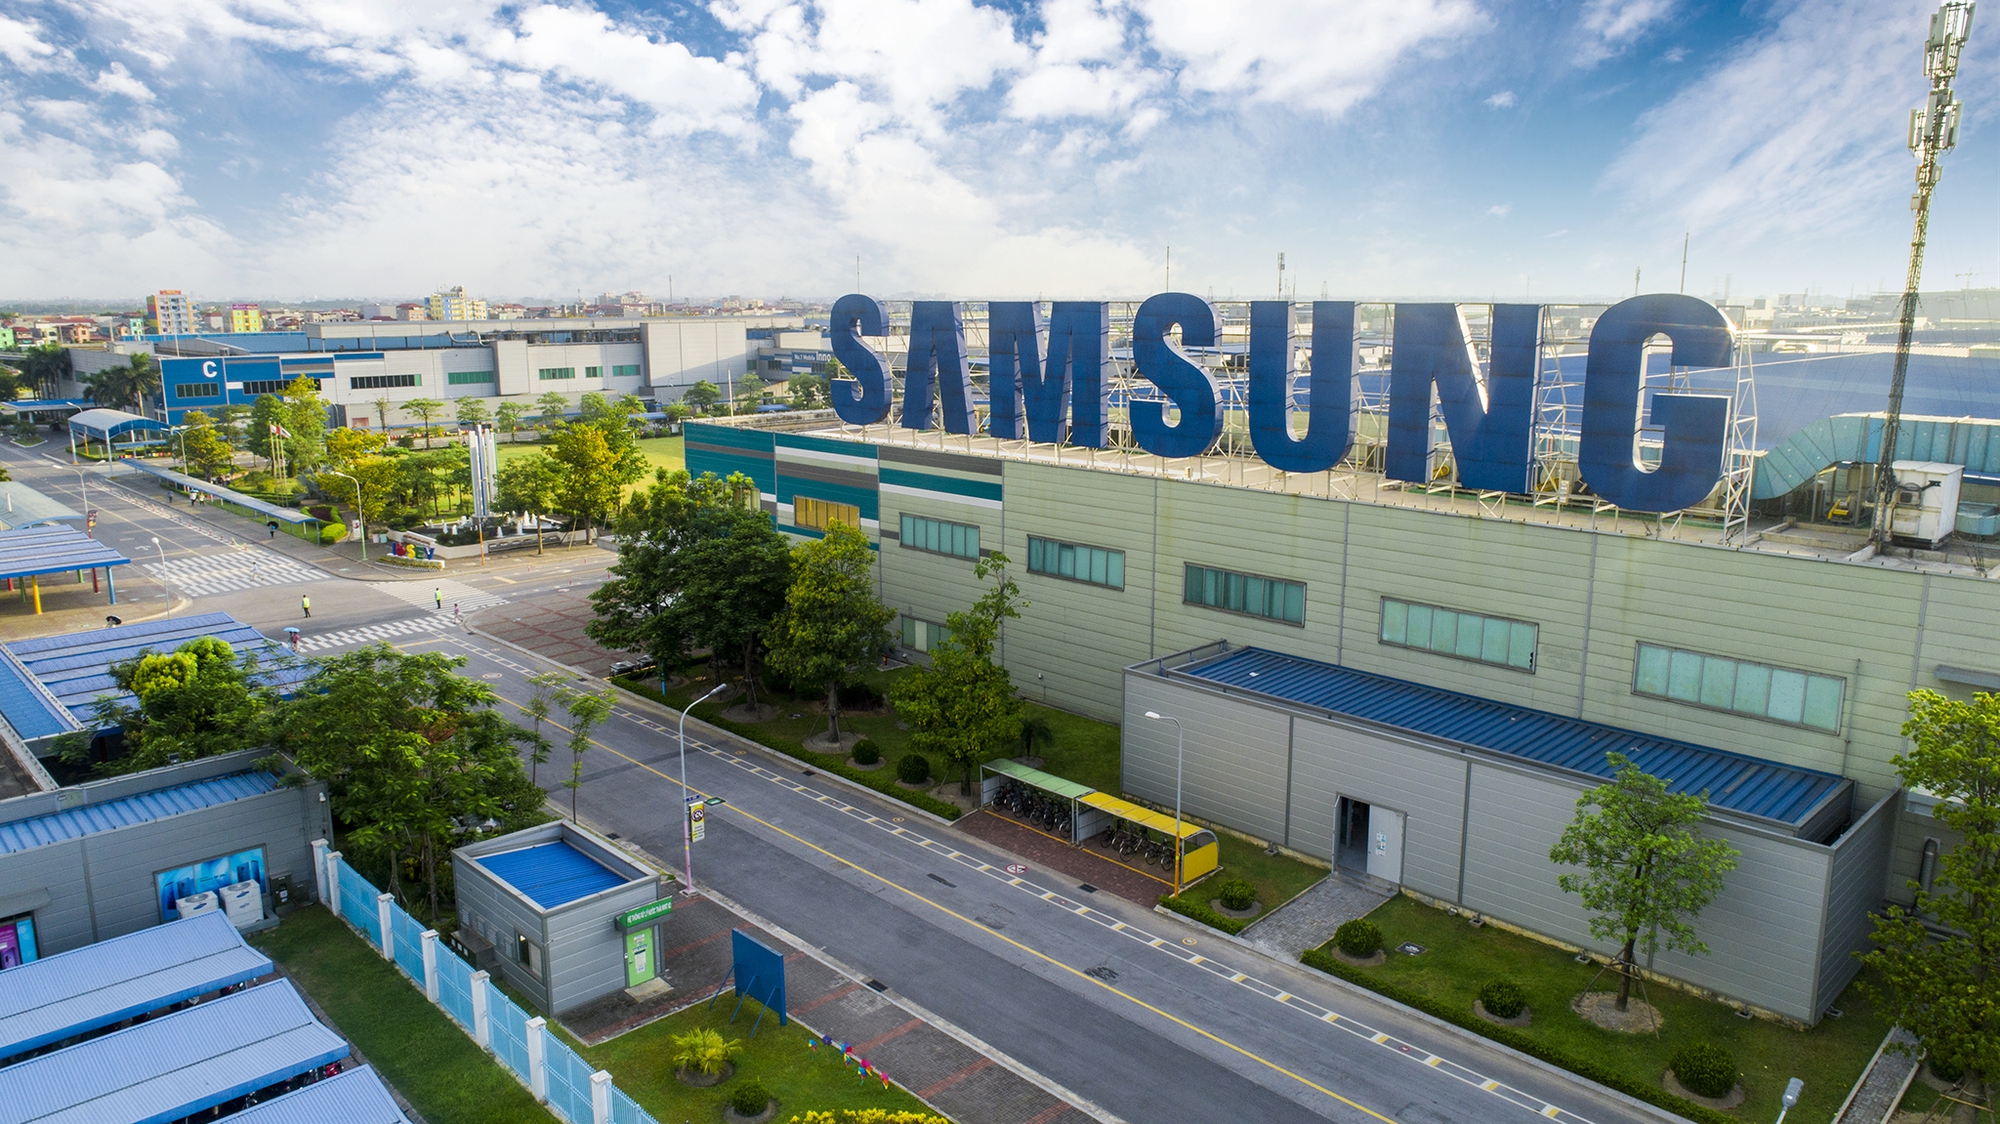 Nhà máy Samsung tại TP.HCM than chưa được hoàn thuế VAT lên đến hàng chục triệu USD - Ảnh 1.